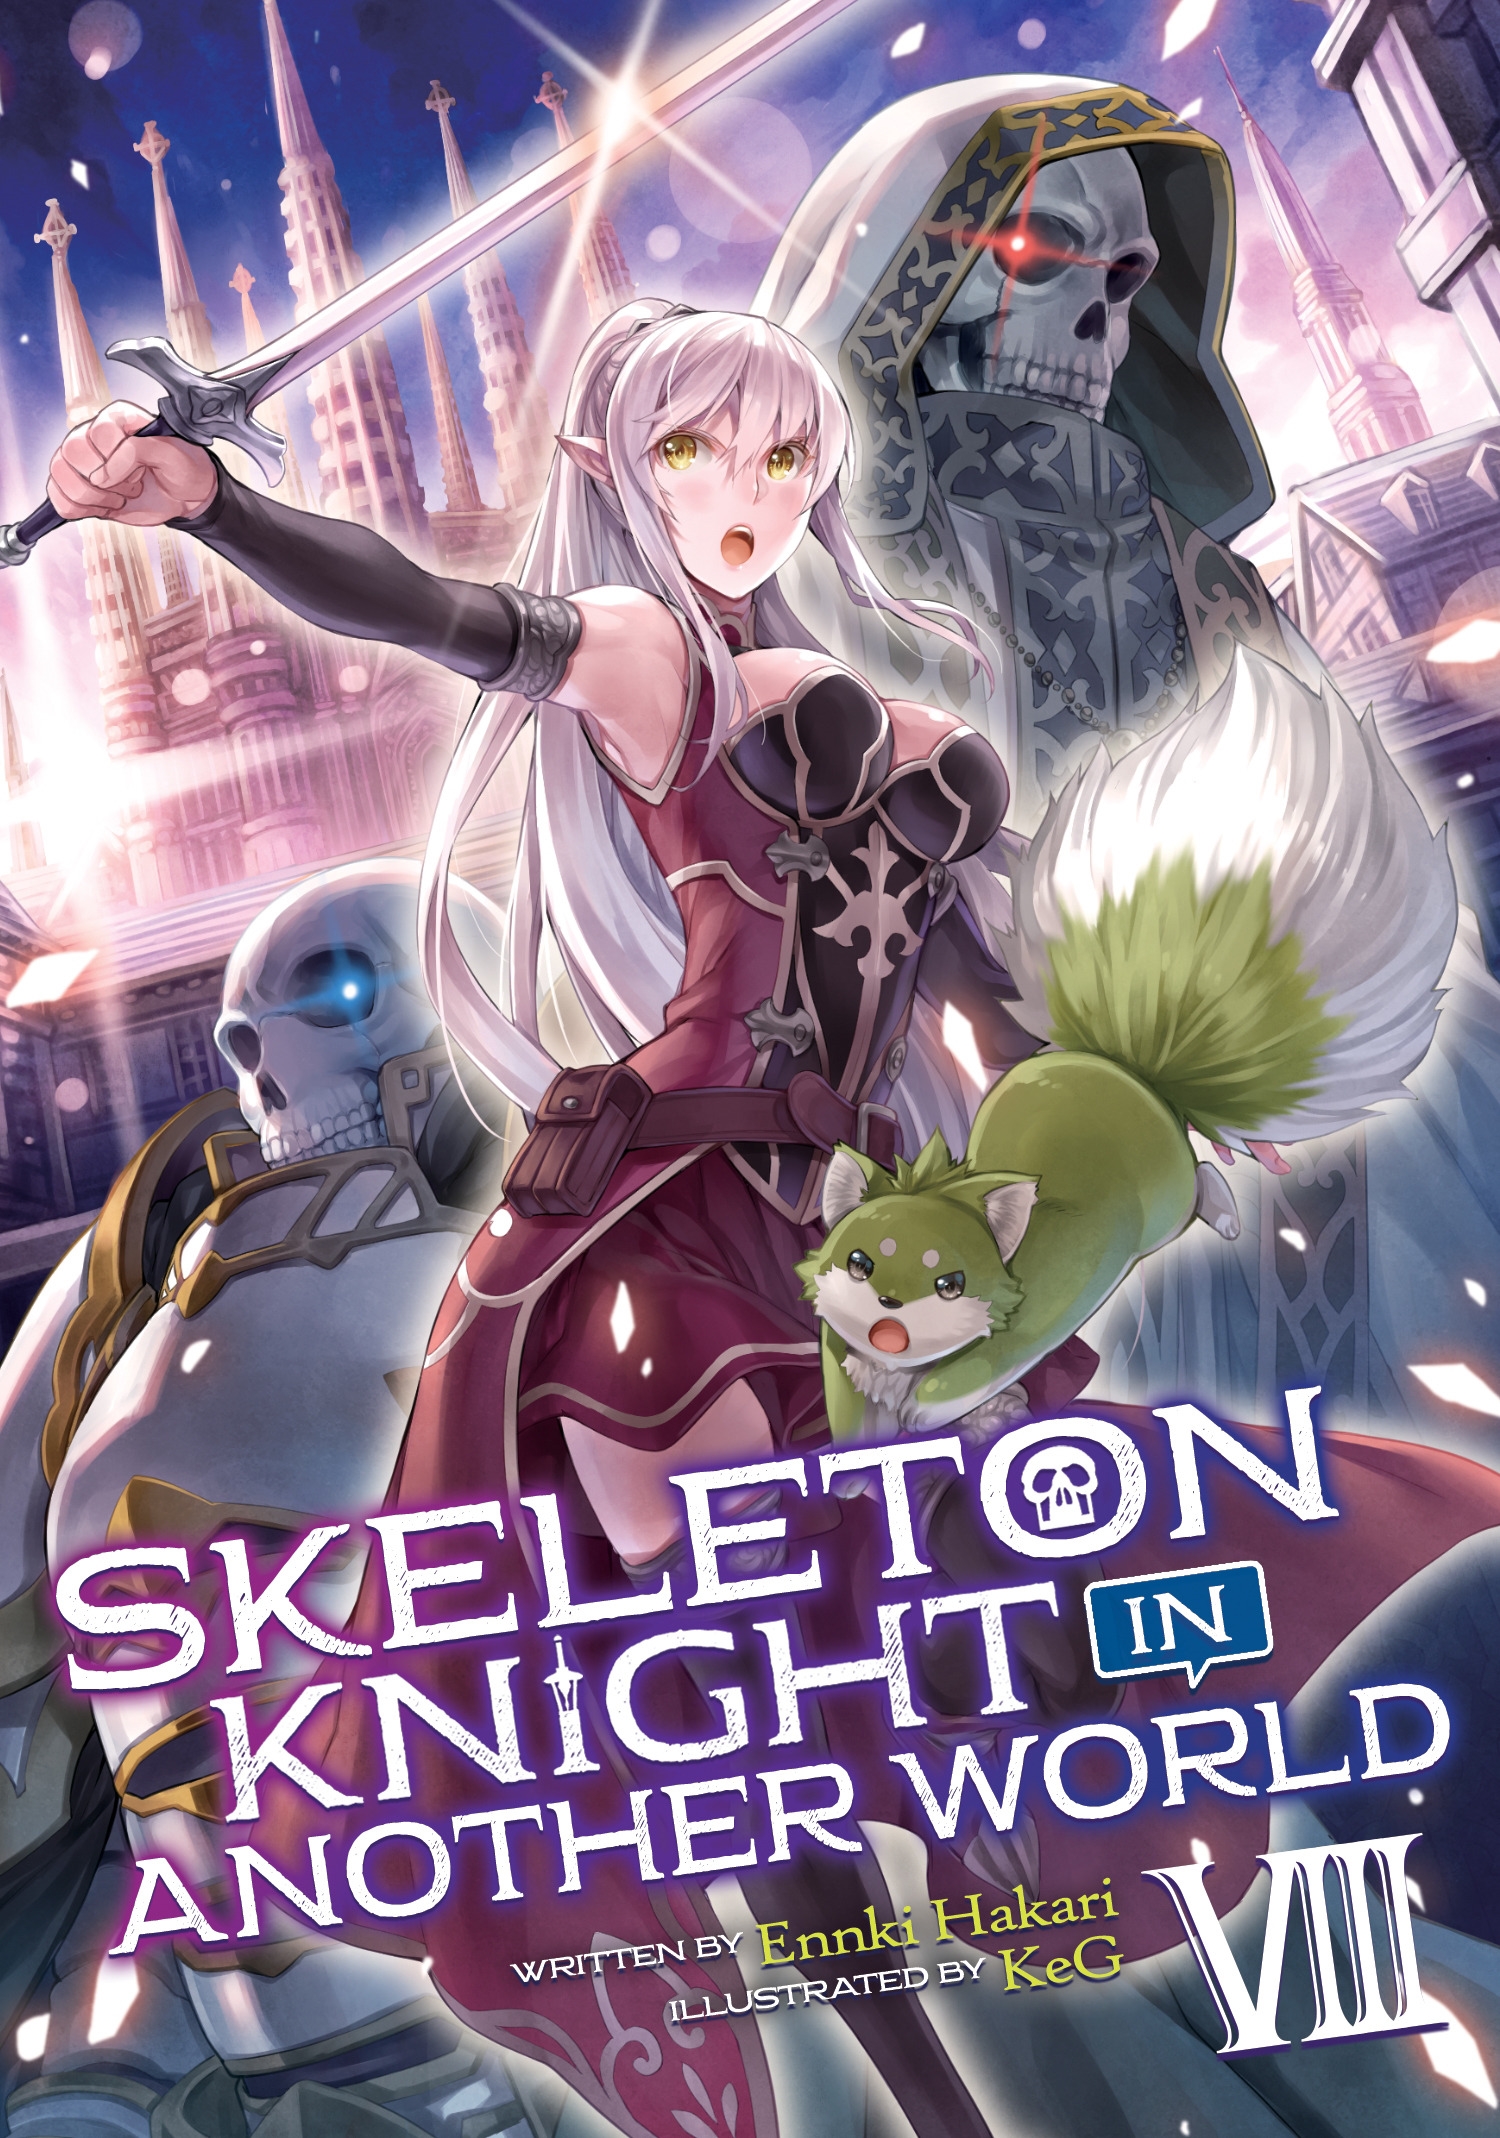 Skeleton Knight In Another World Light Novel Vol 8 By Ennki Hakari Penguin Books Australia